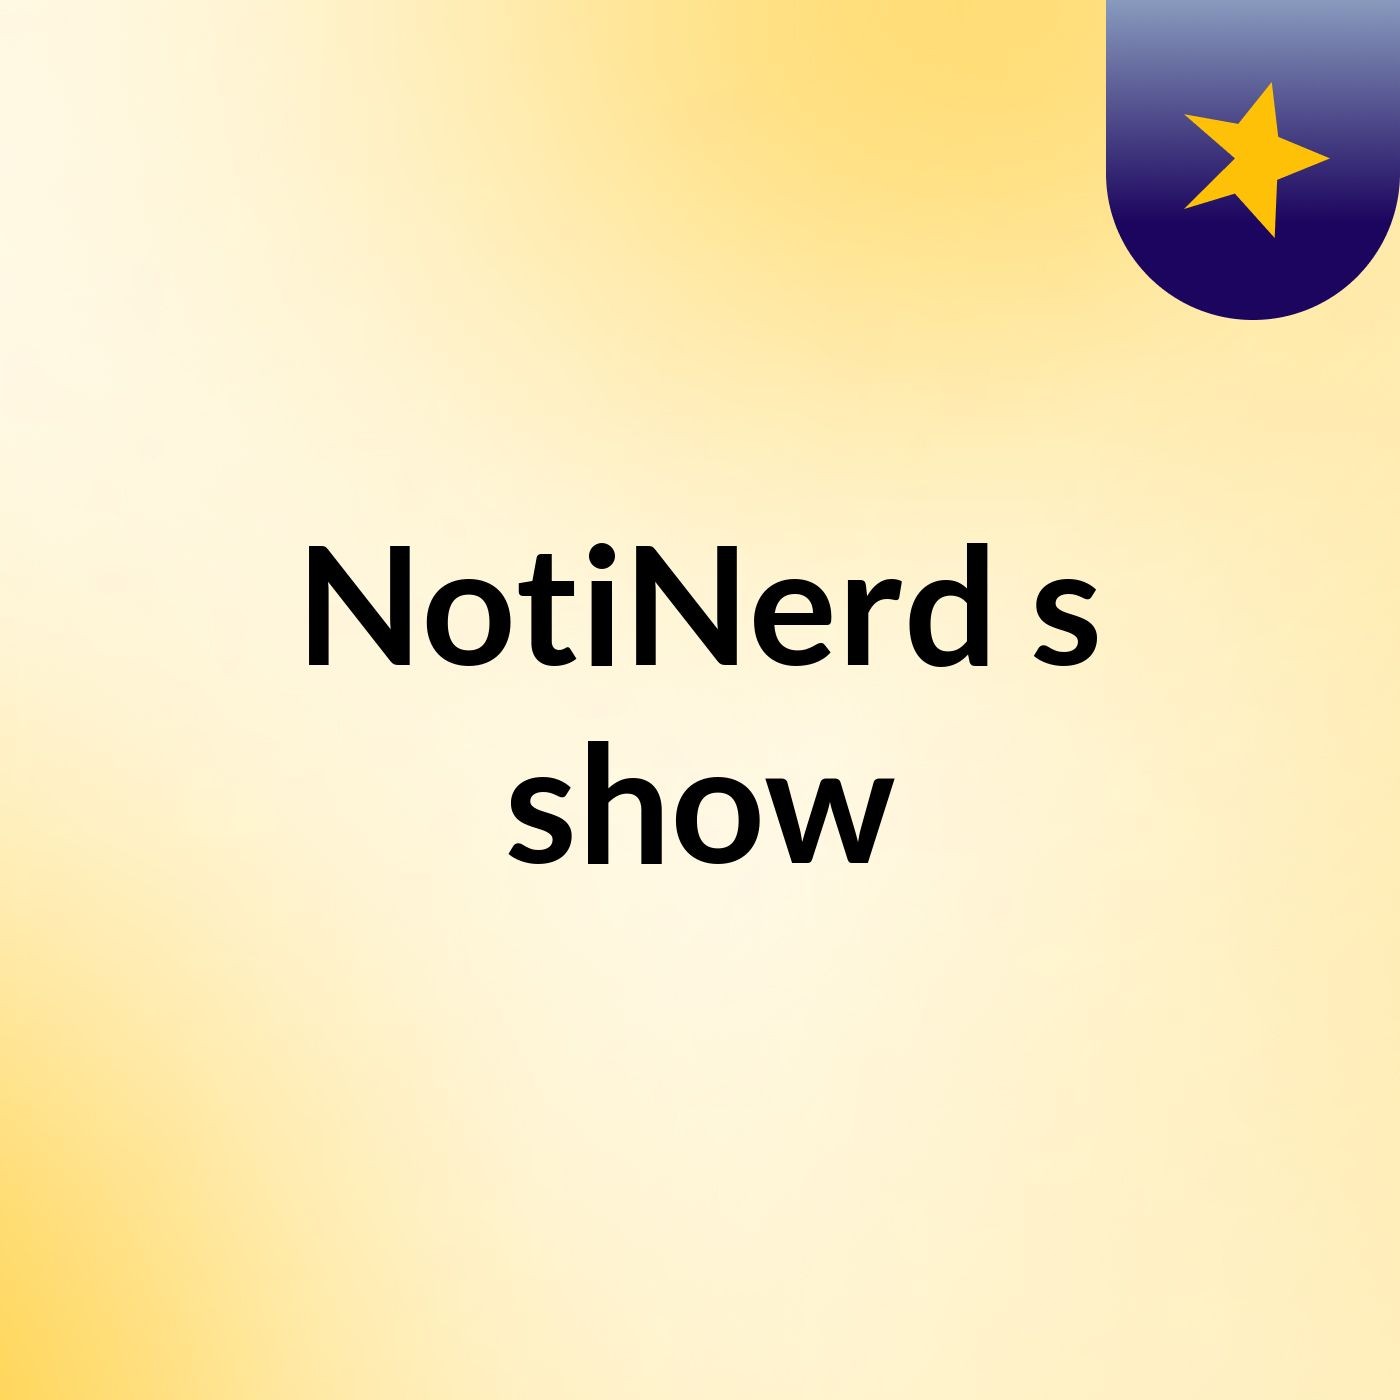 NotiNerd's show